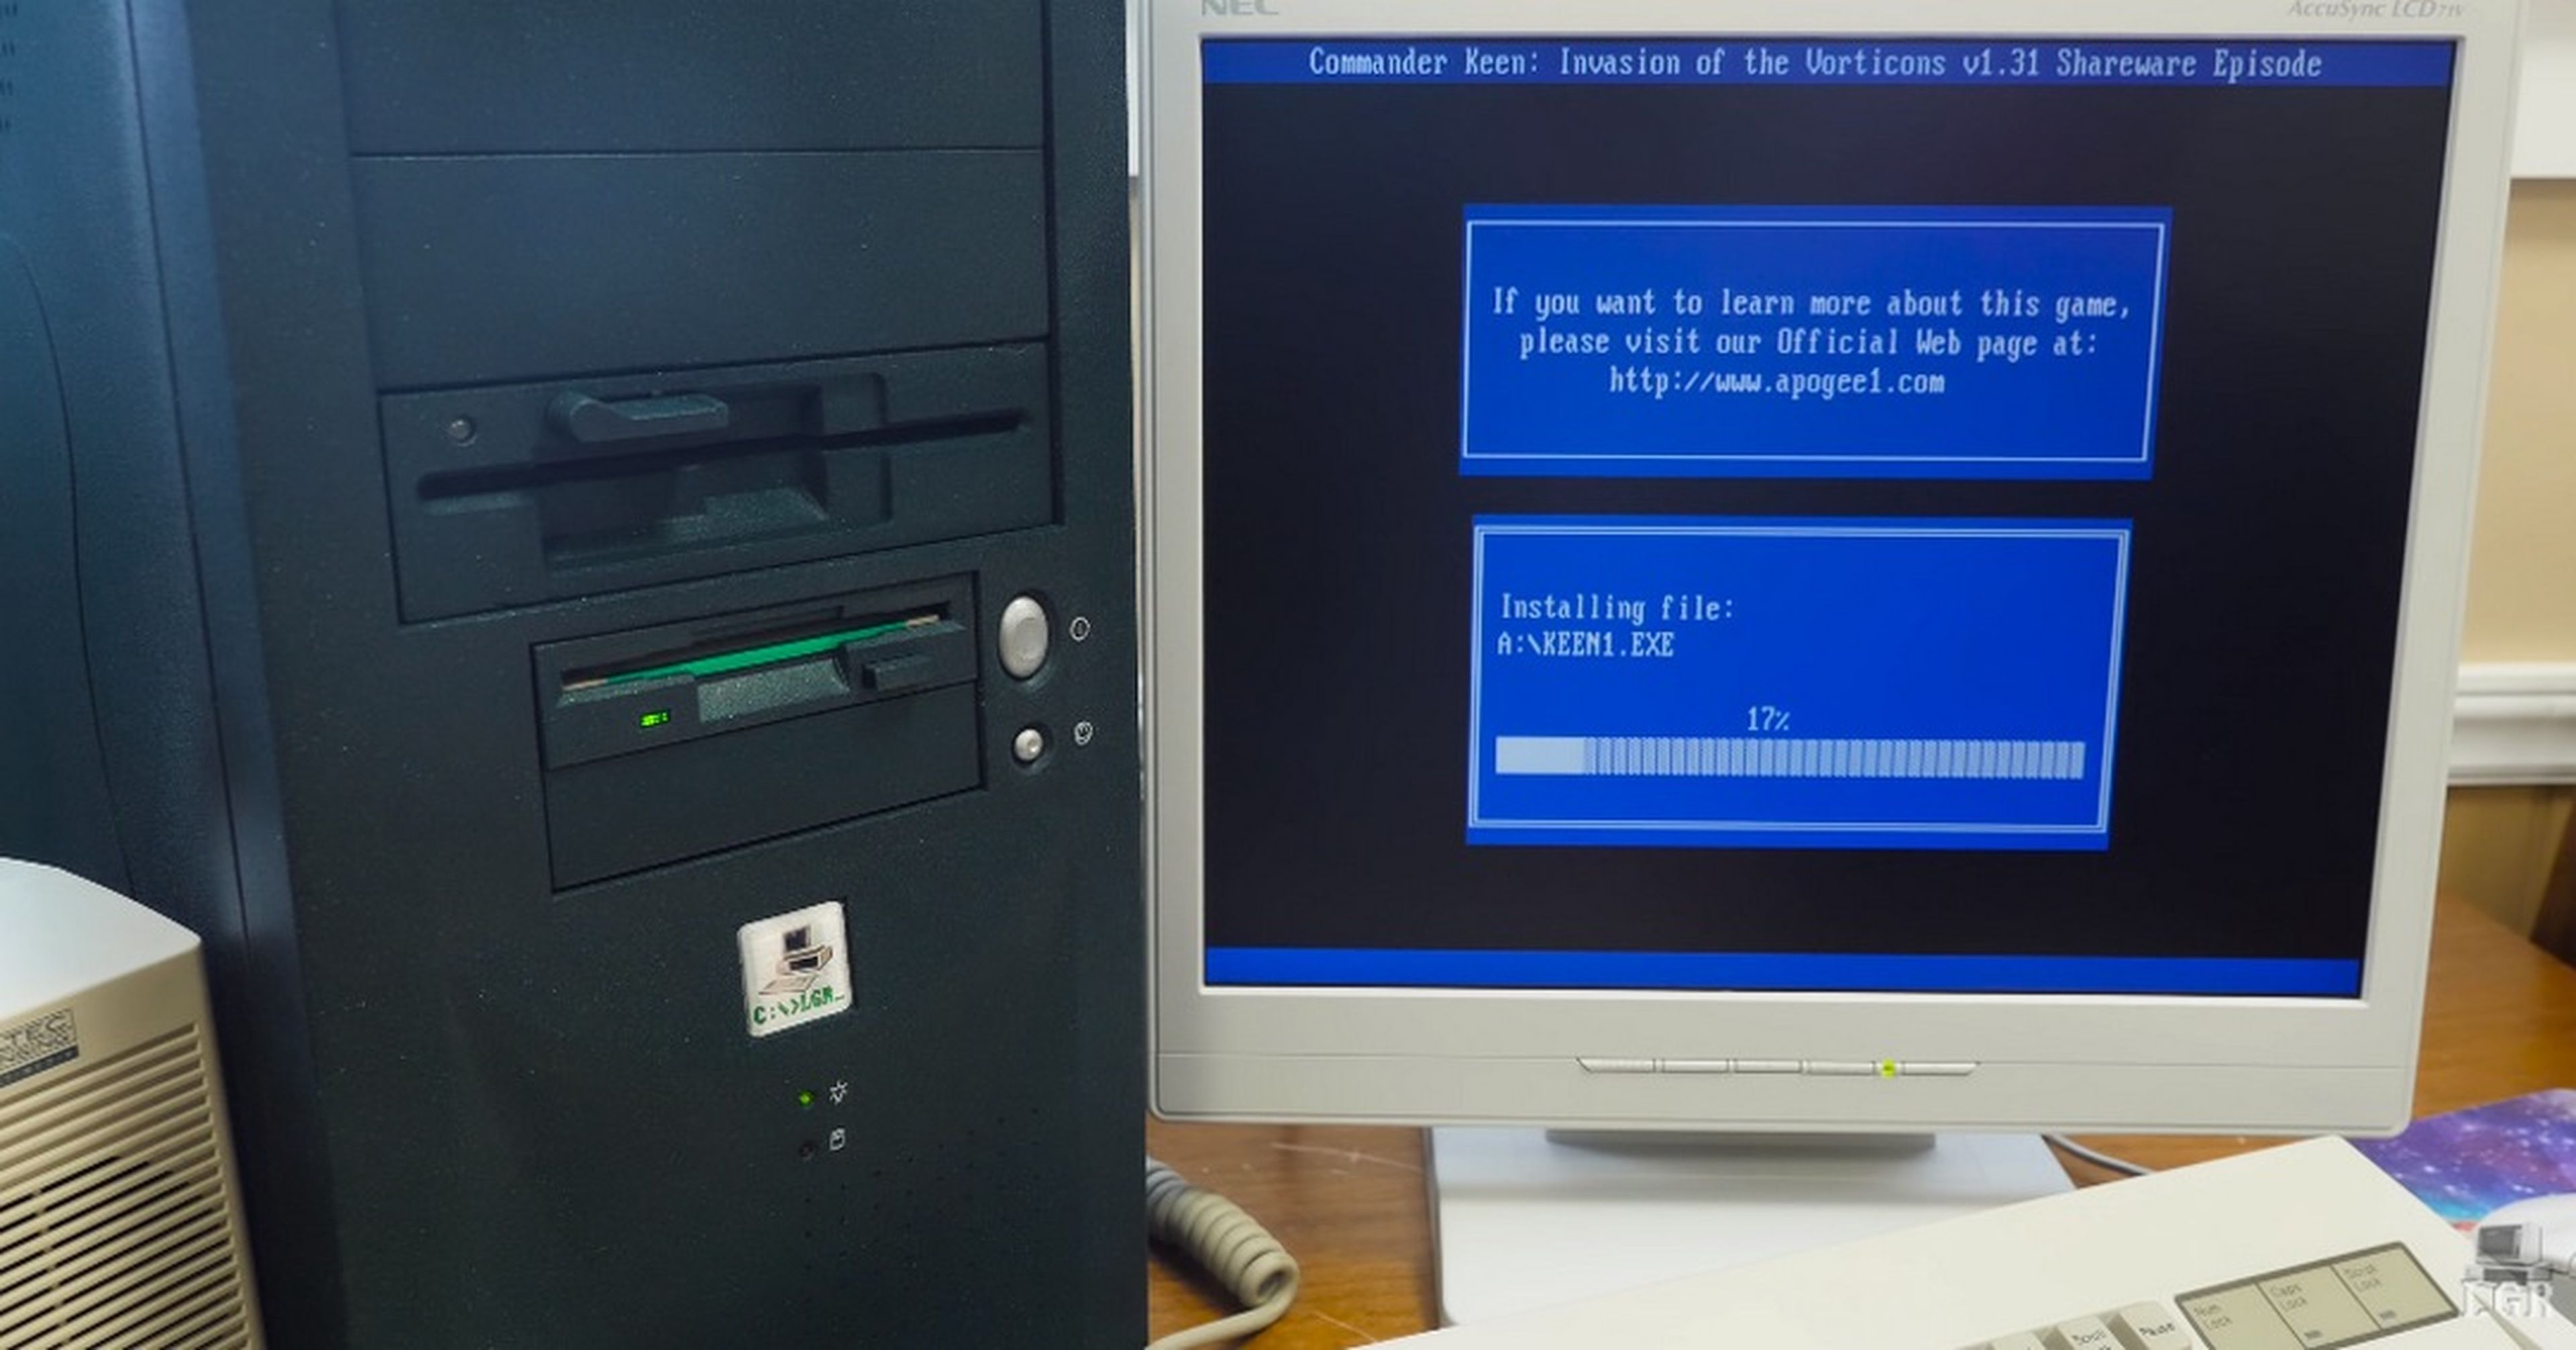 Consiguen ejecutar juegos en floppy disk en un móvil